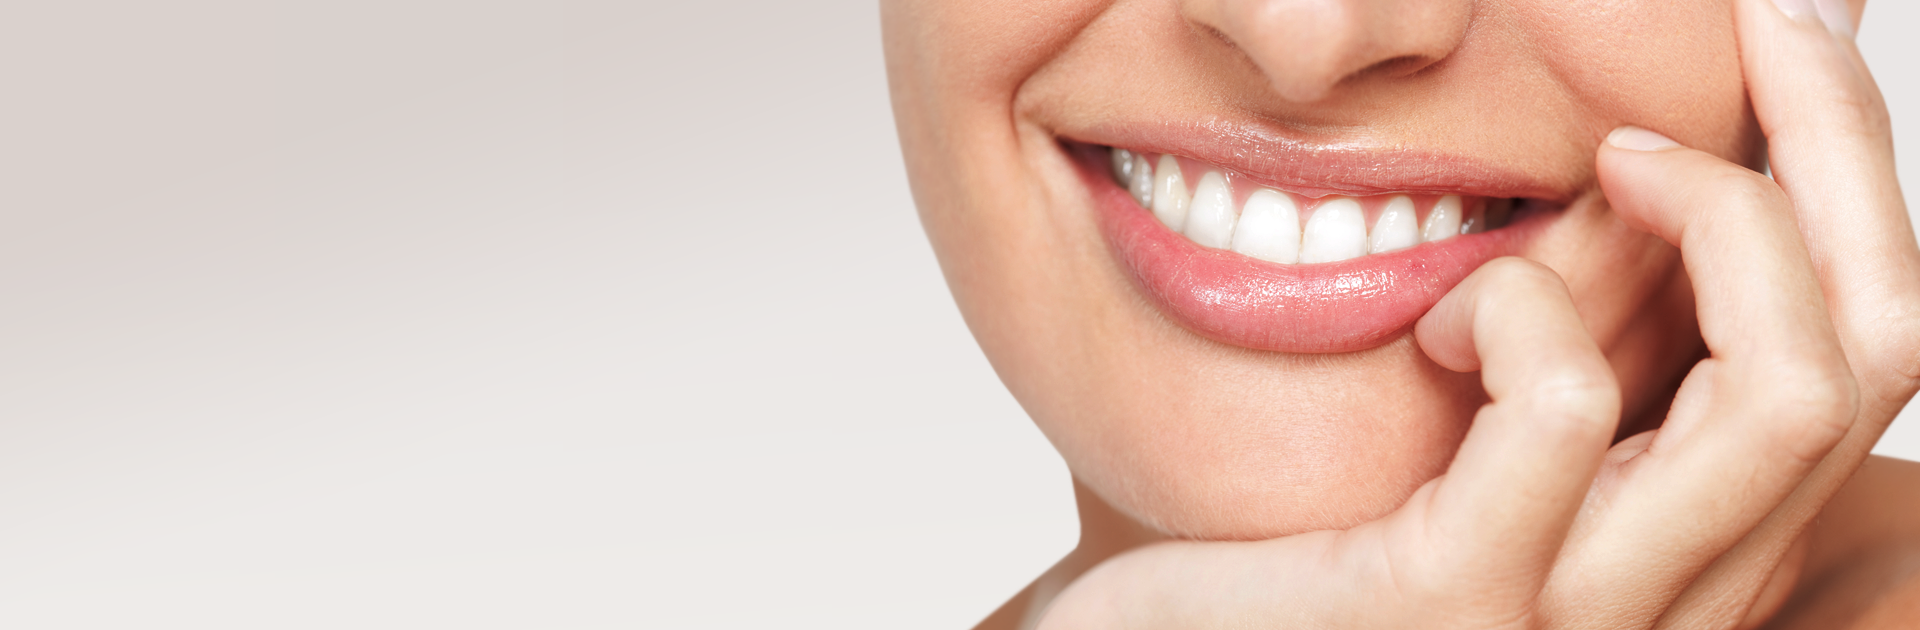 Reinigung von Zahnkanälen – Endodontie